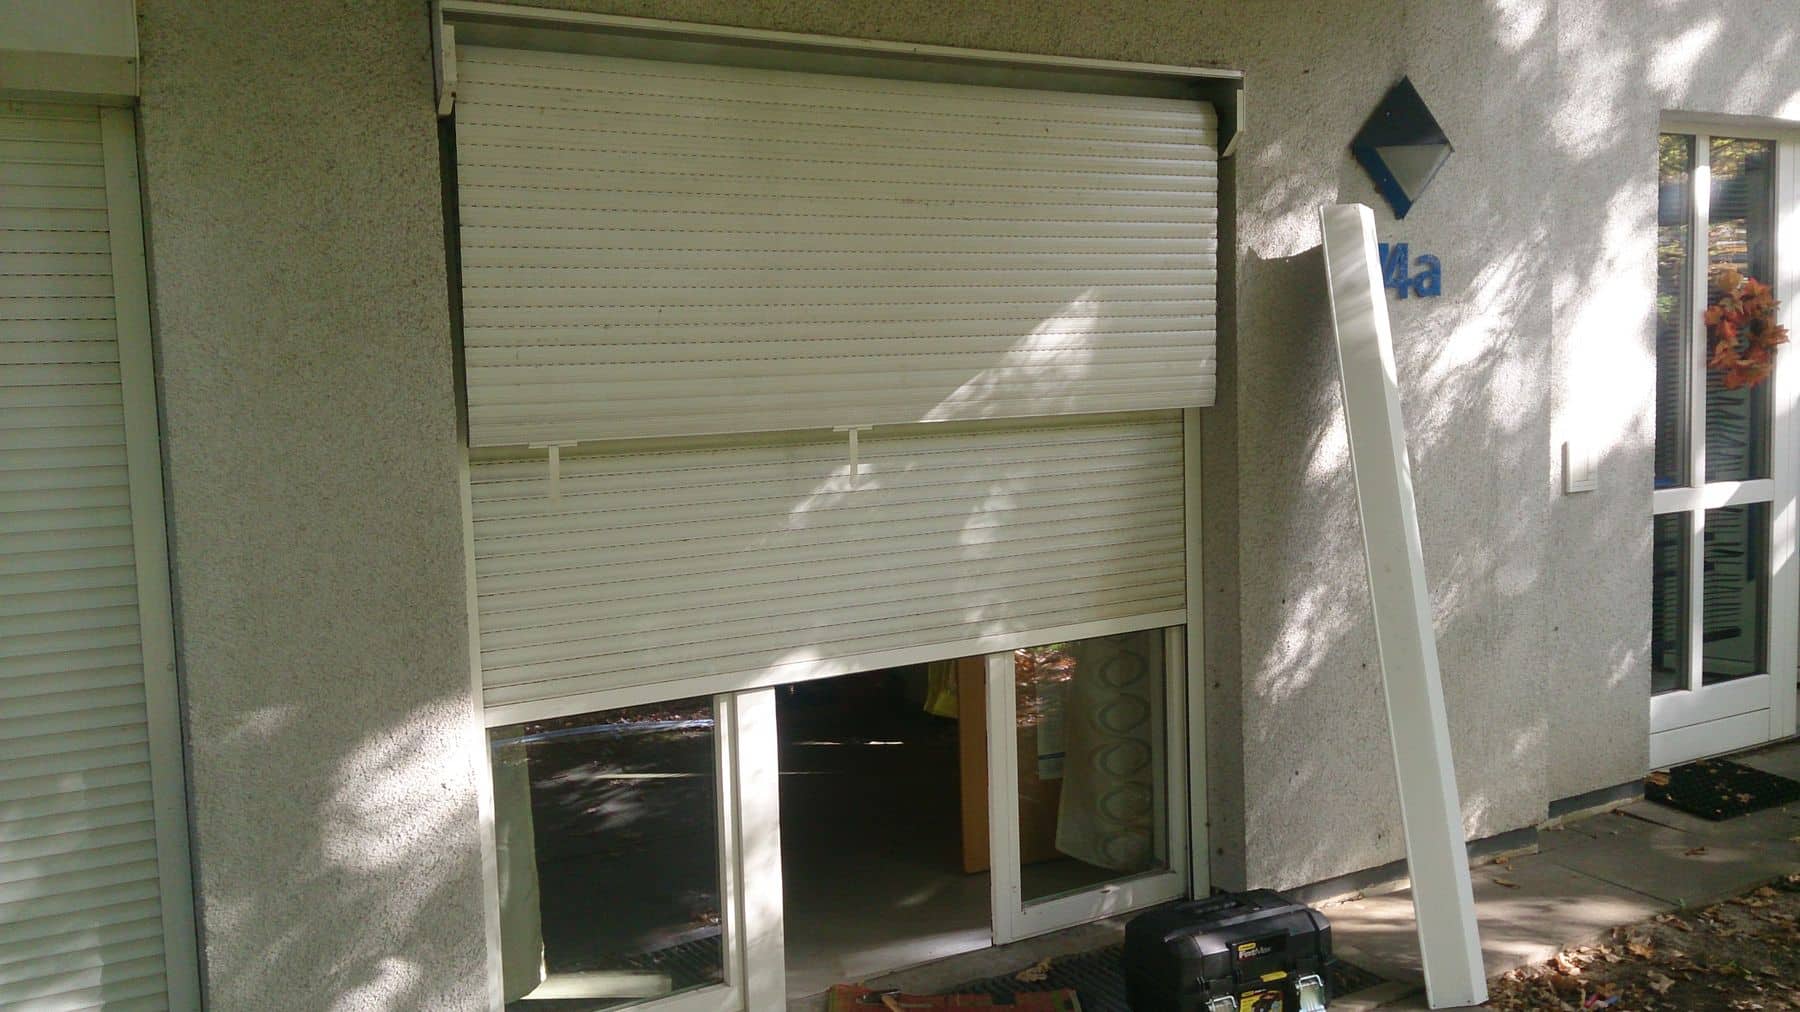 Ein Fenster mit halb geschlossenen Jalousien, die einen Schatten auf die Außenwand werfen, daneben eine offene Tür mit verschiedenen Gegenständen, darunter eine Leiter, auf dem Boden in der Nähe.